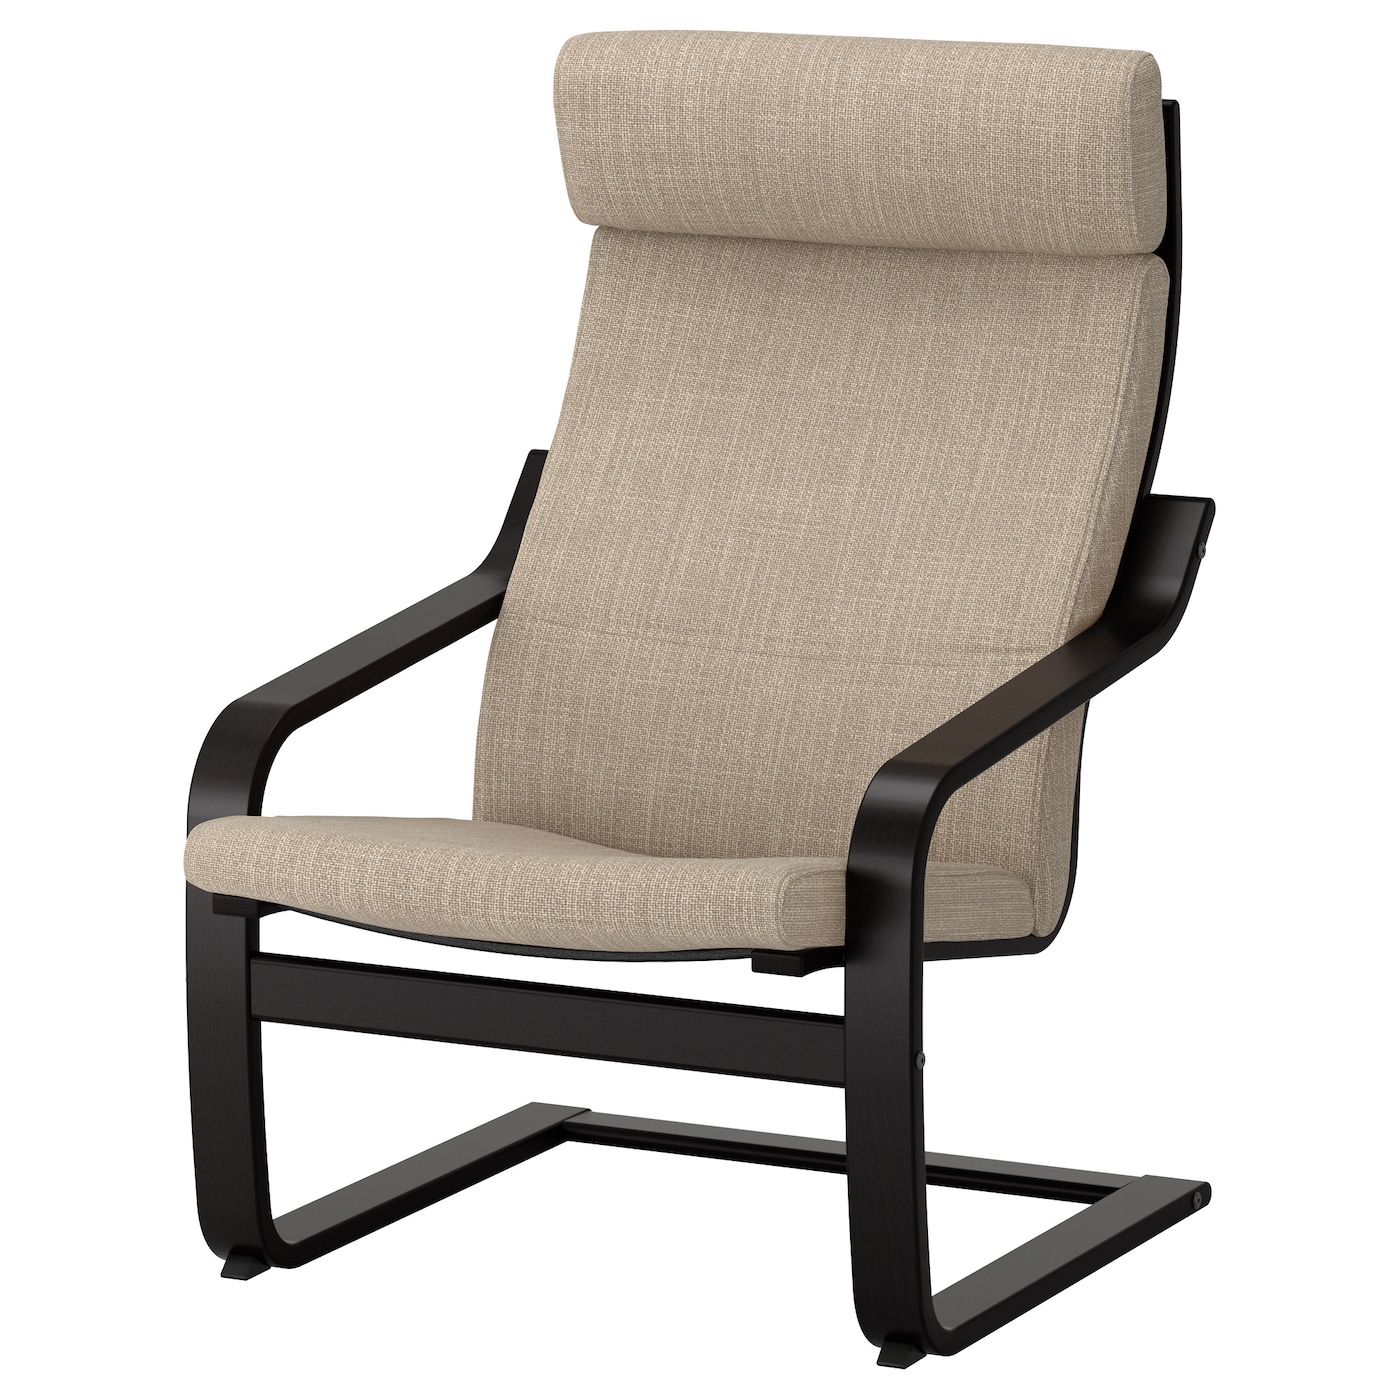 ПОЭНГ Кресло, черно-коричневый/Хилларед бежевый POÄNG IKEA кресло tetchair сн757 ткань коричневый бежевый c 26 c 13